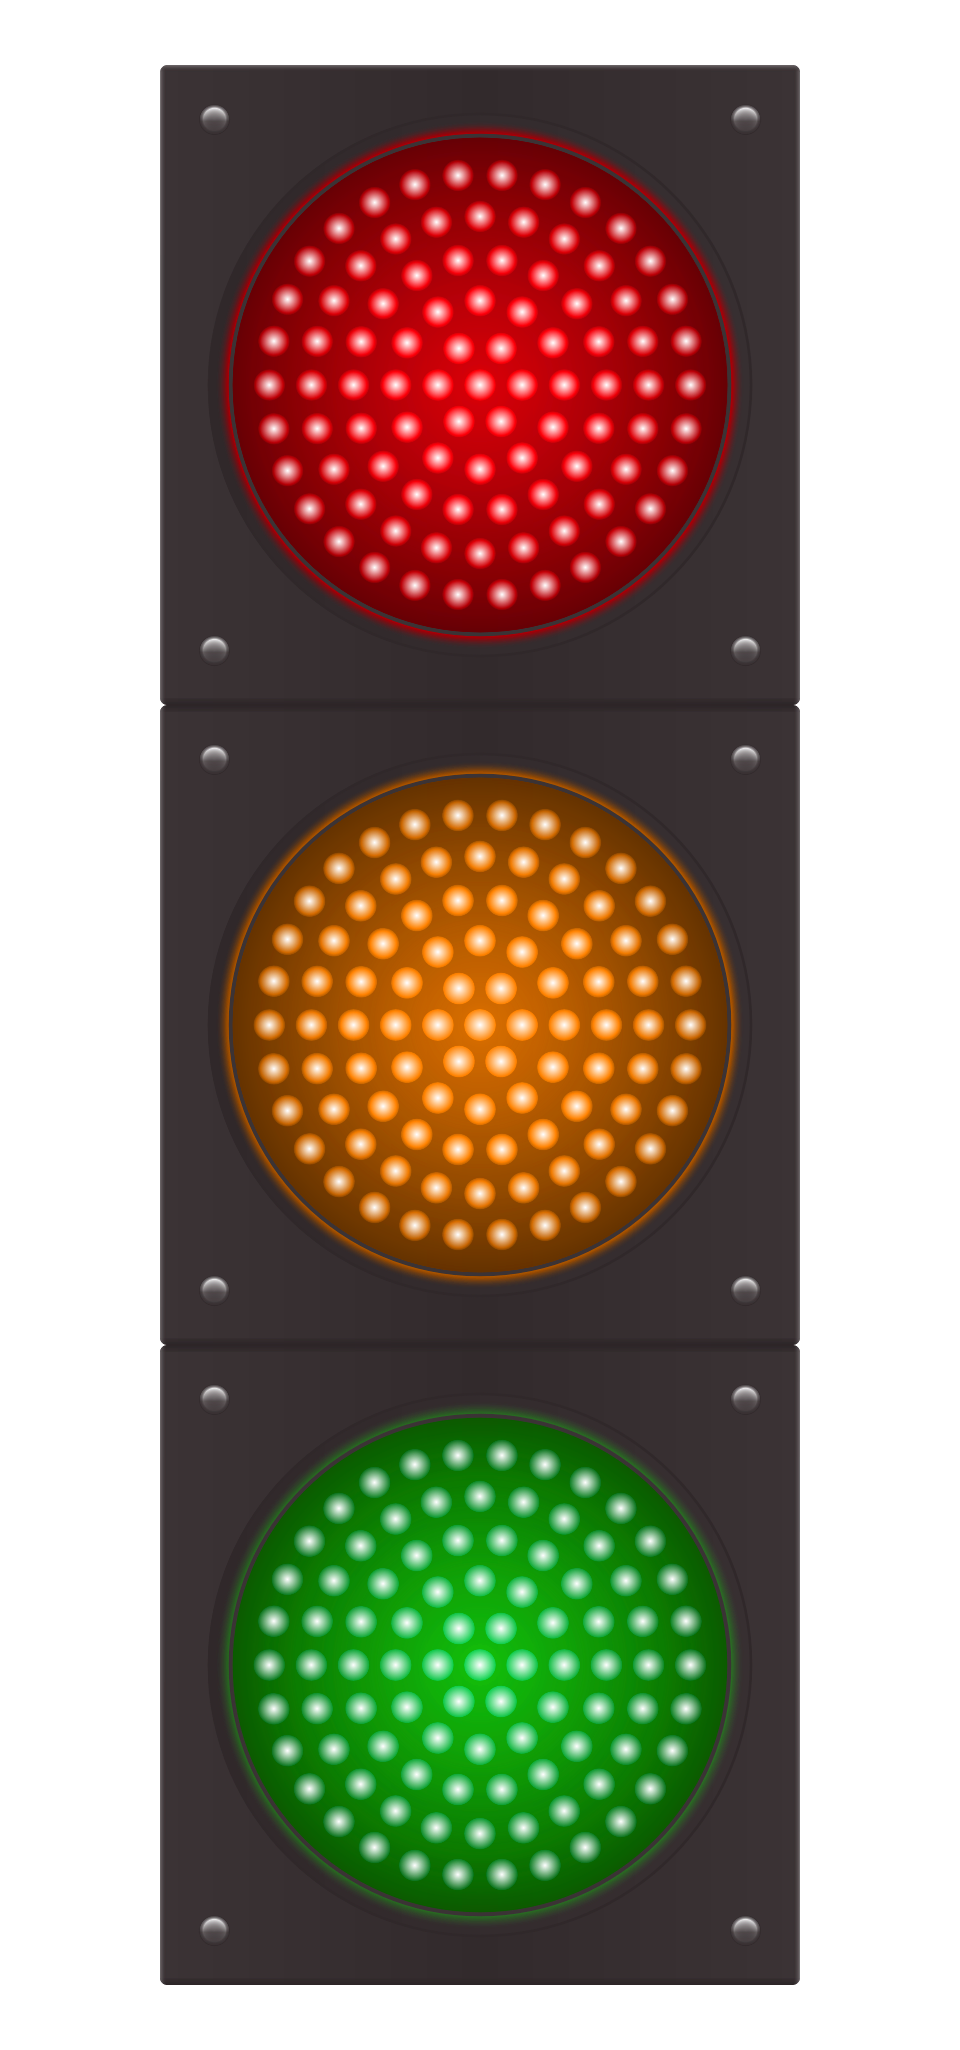 Traffic Light Vector